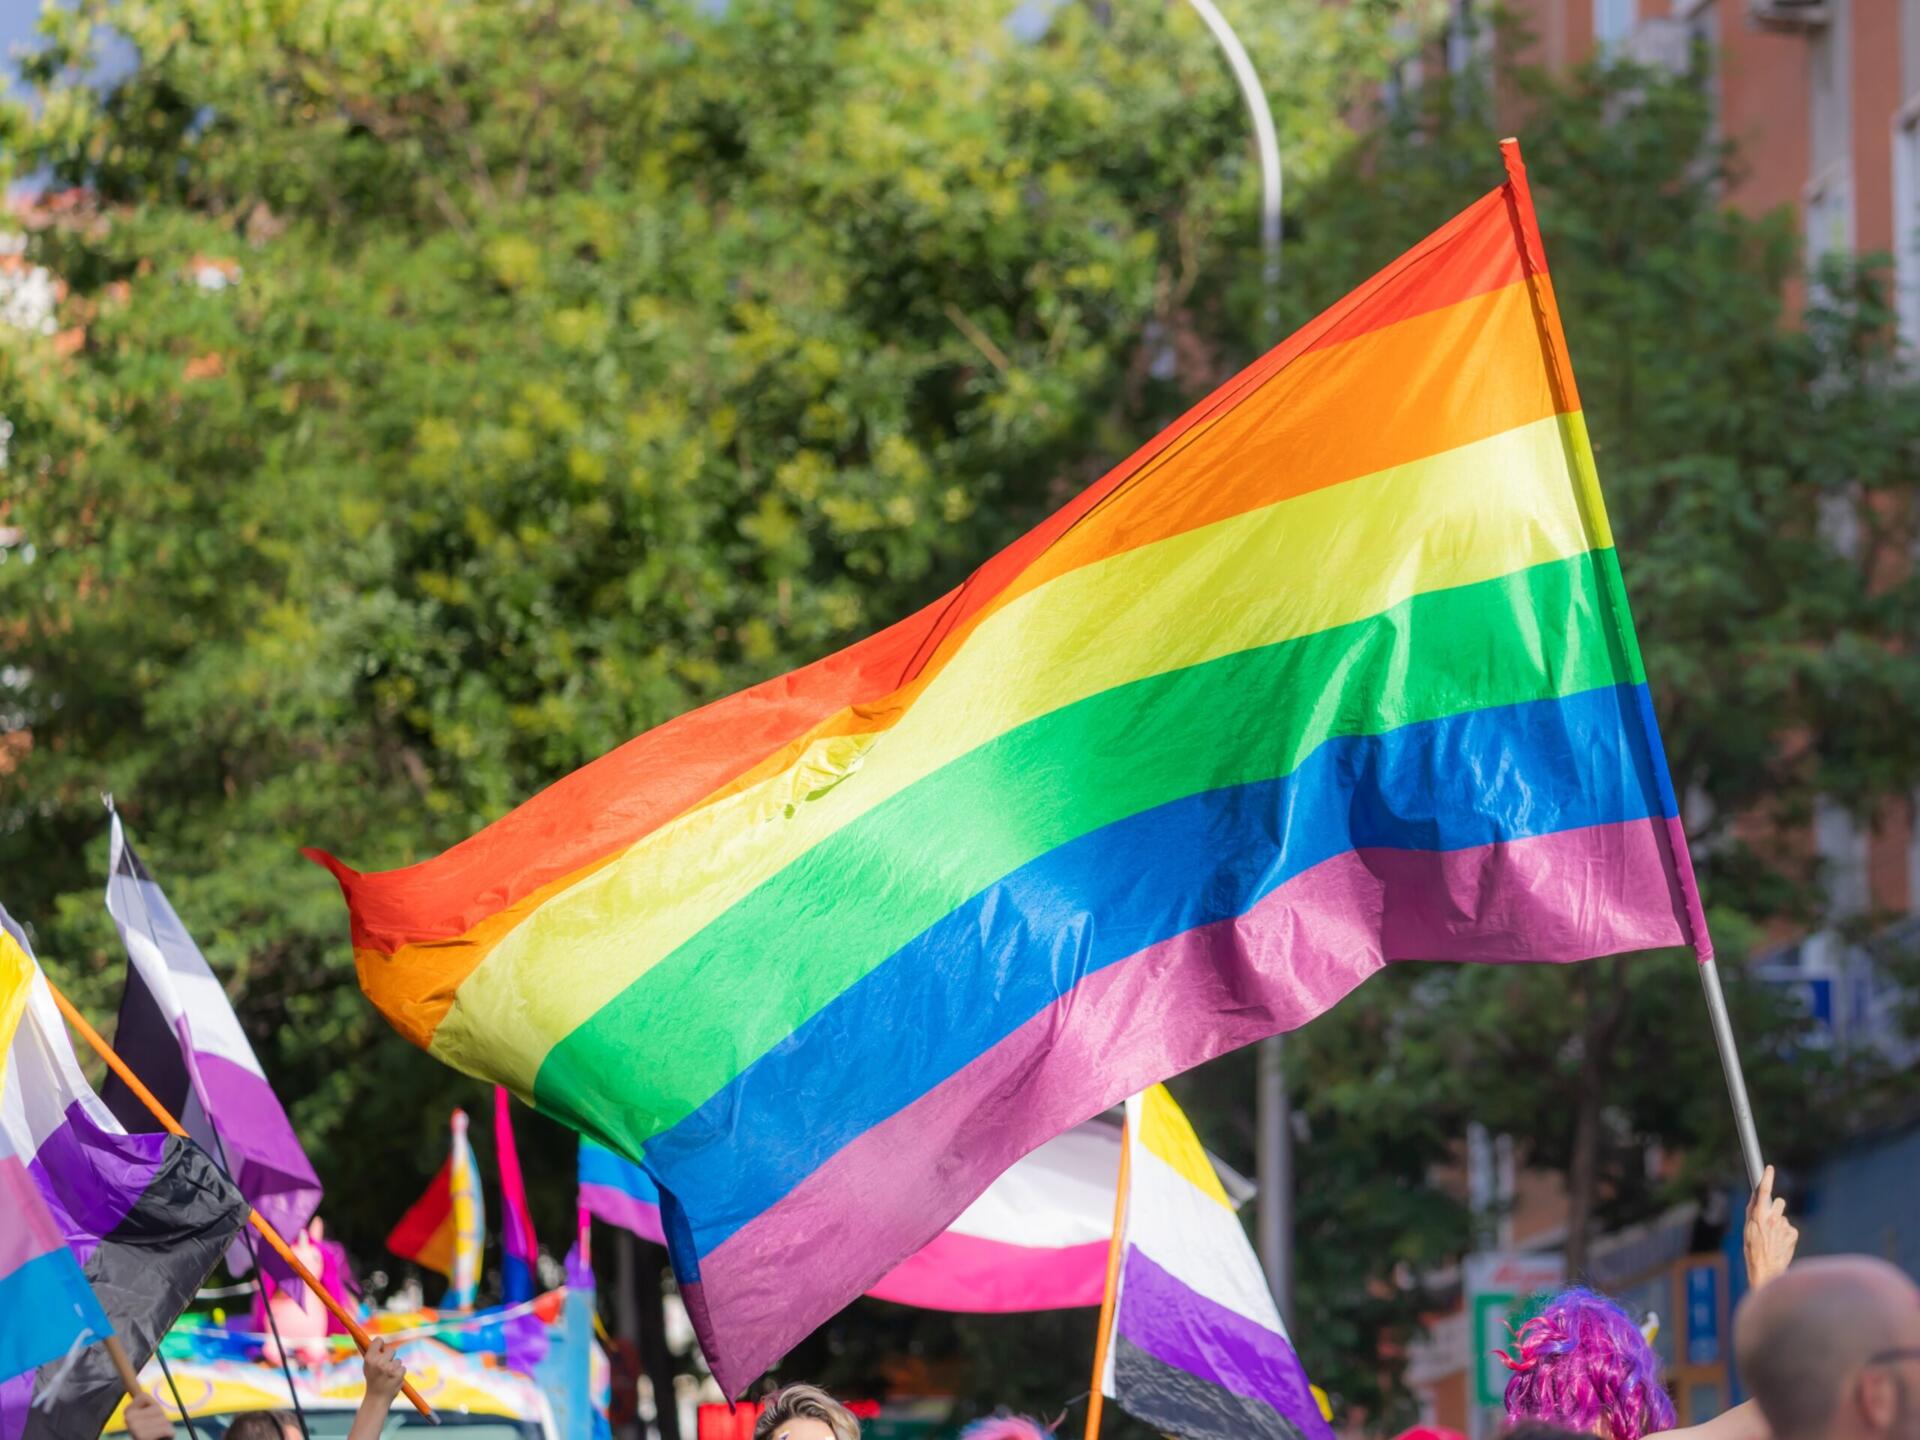 Miriam Germán instruye llamar a miembros de la comunidad LGBTIQ por el género adoptado